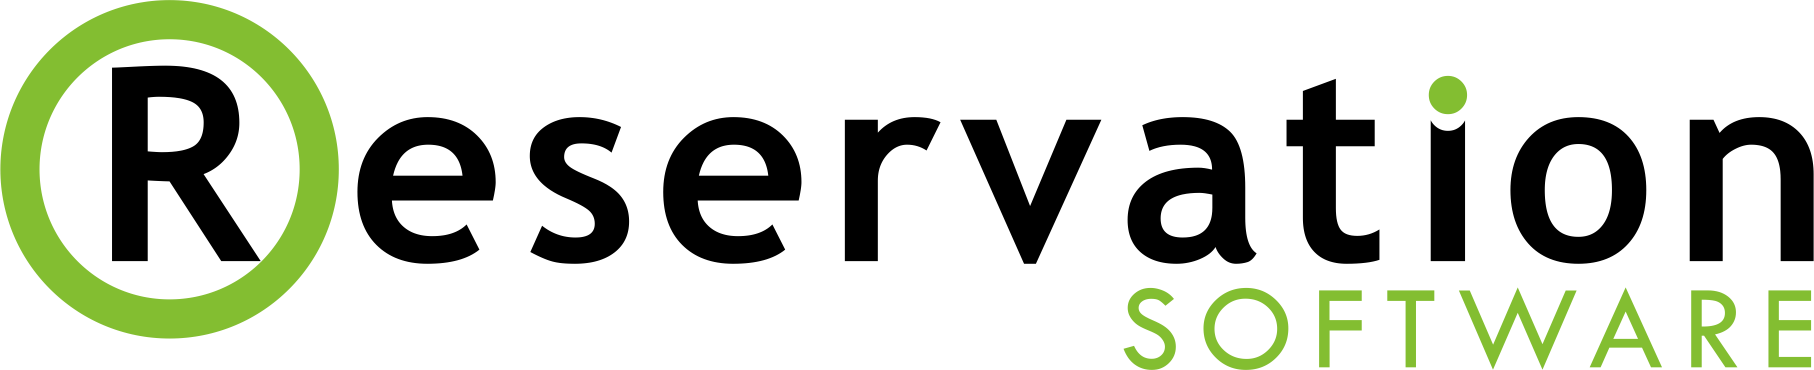 Reservation Software Logo-1